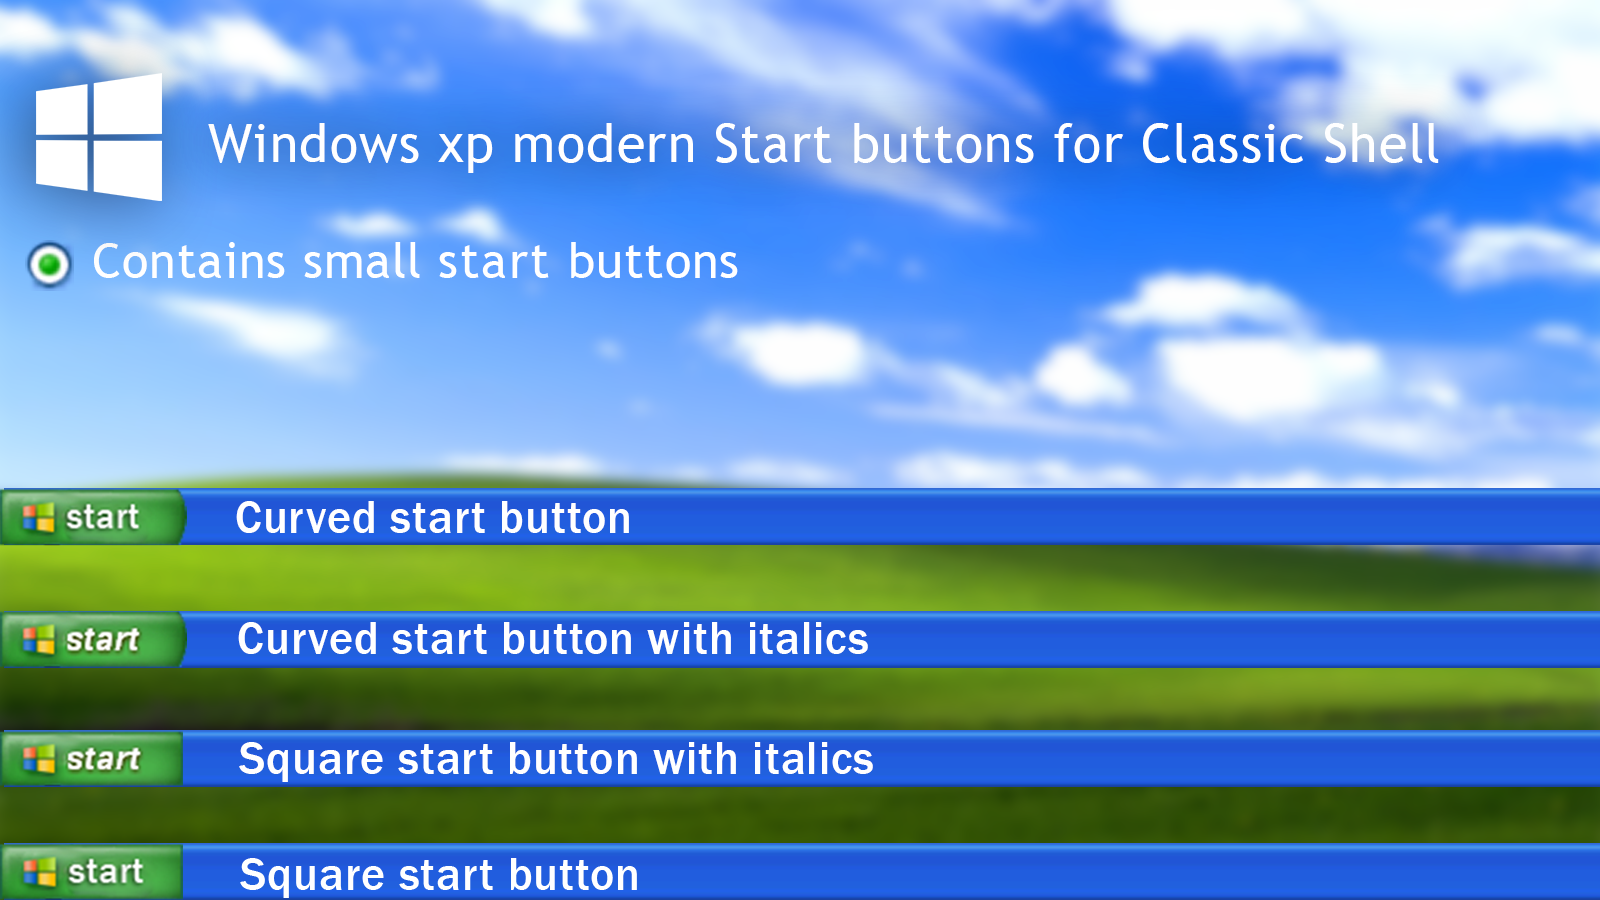 logo Center Expert Windows XP modern start buttons for Classic Shell by CheezeyGaming on  DeviantArt